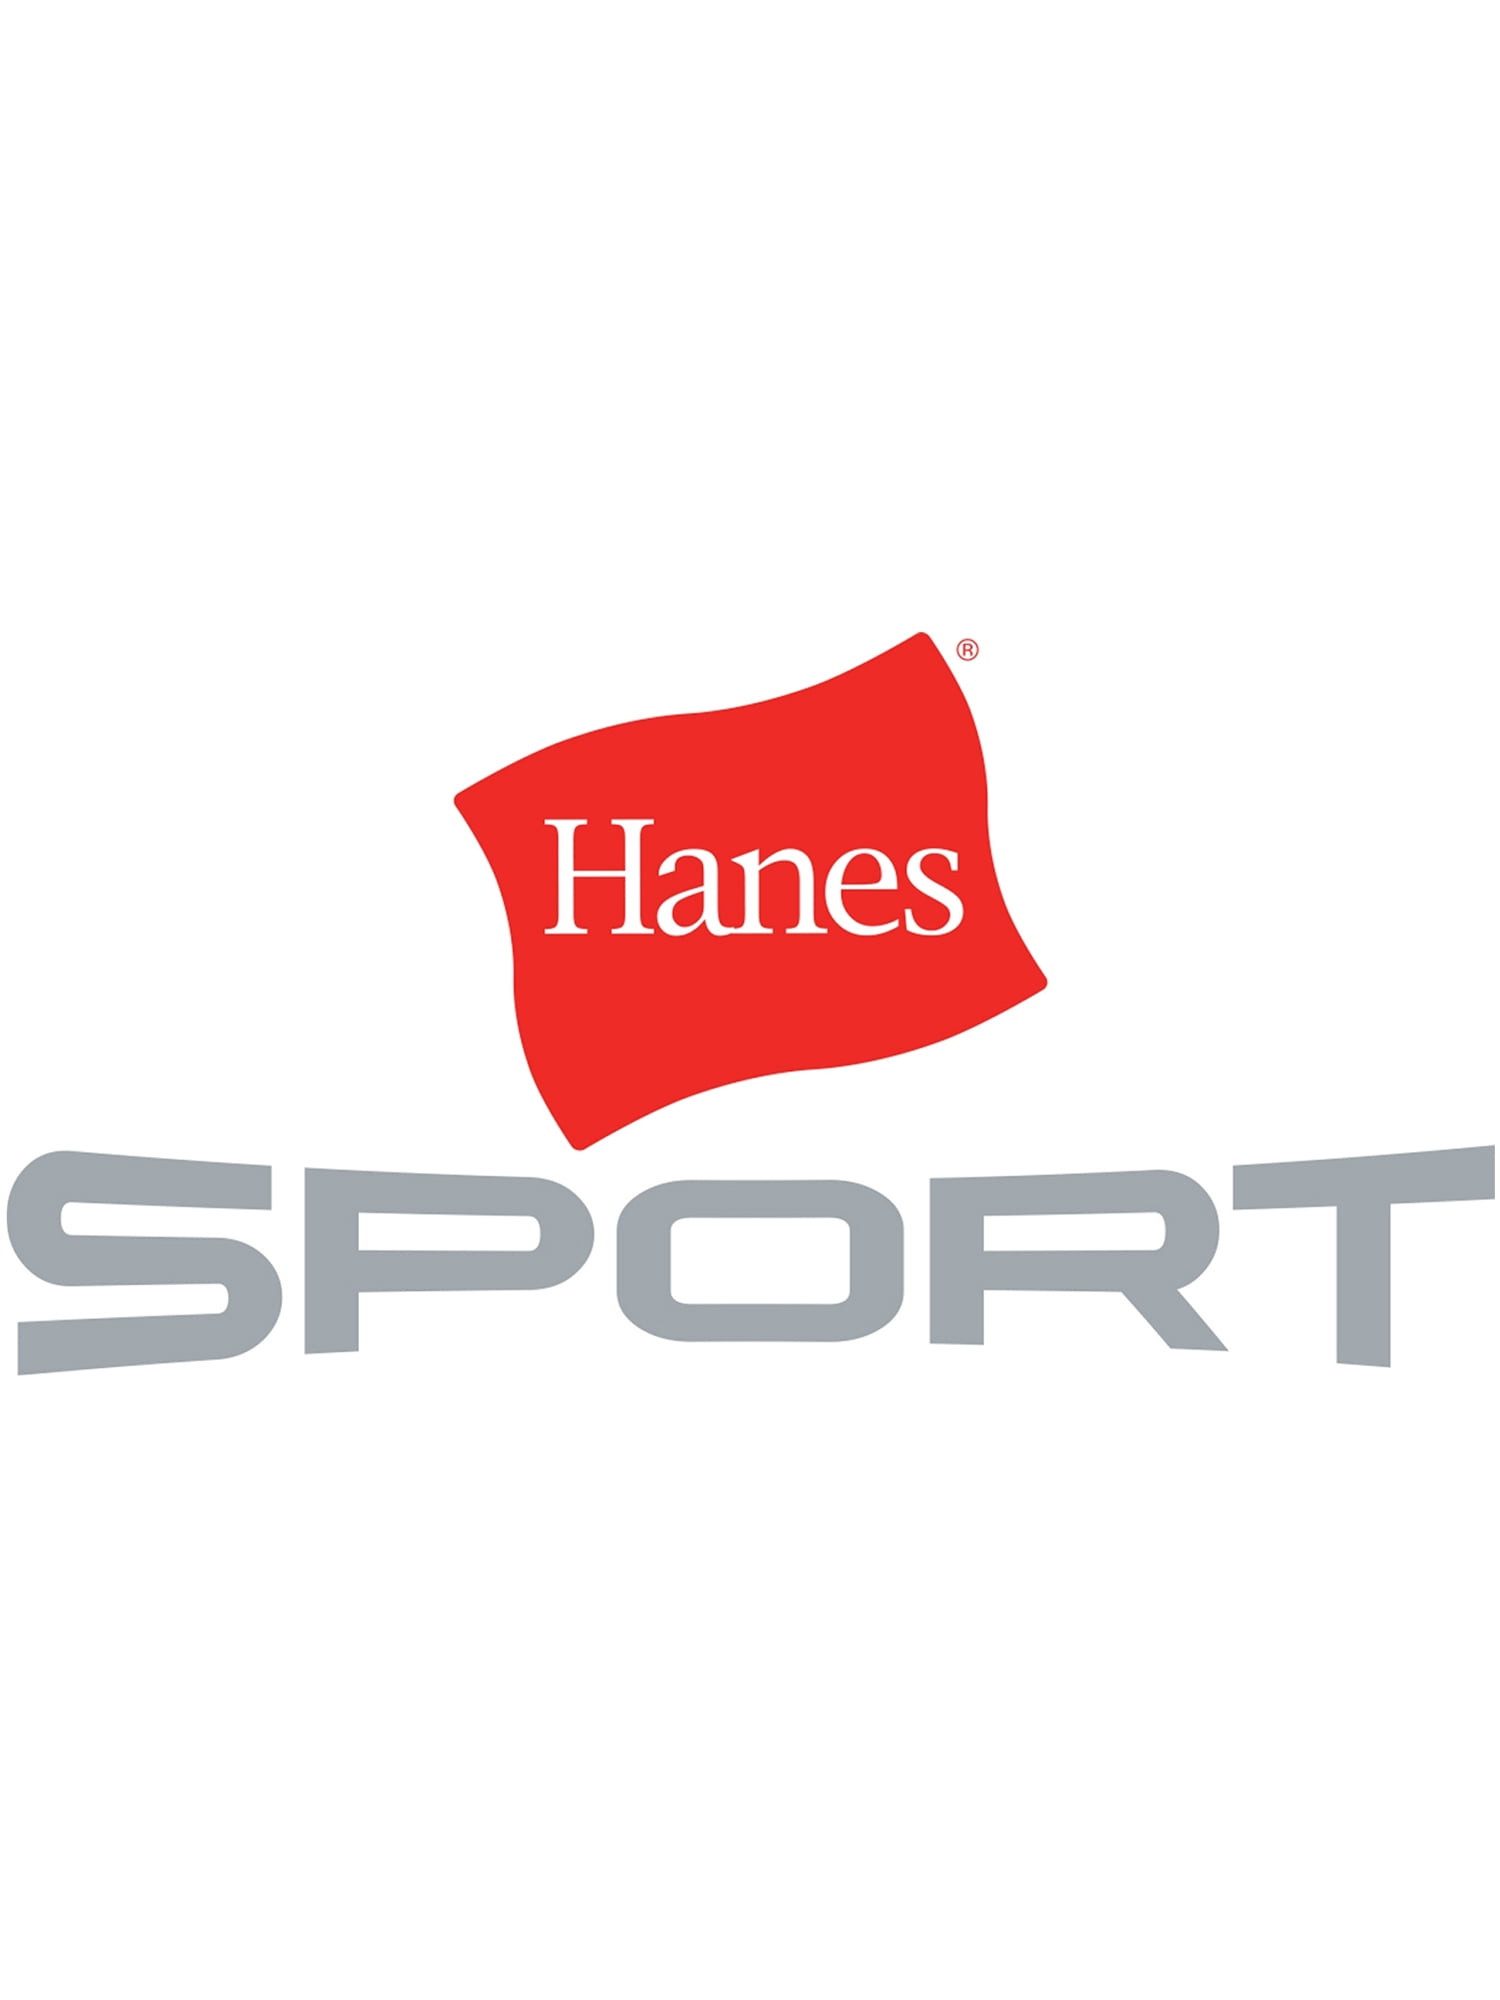 Hanes - Hanes Sport Women's Performance Fleece Full Zip Hoodie -  Walmart.com - Walmart.com